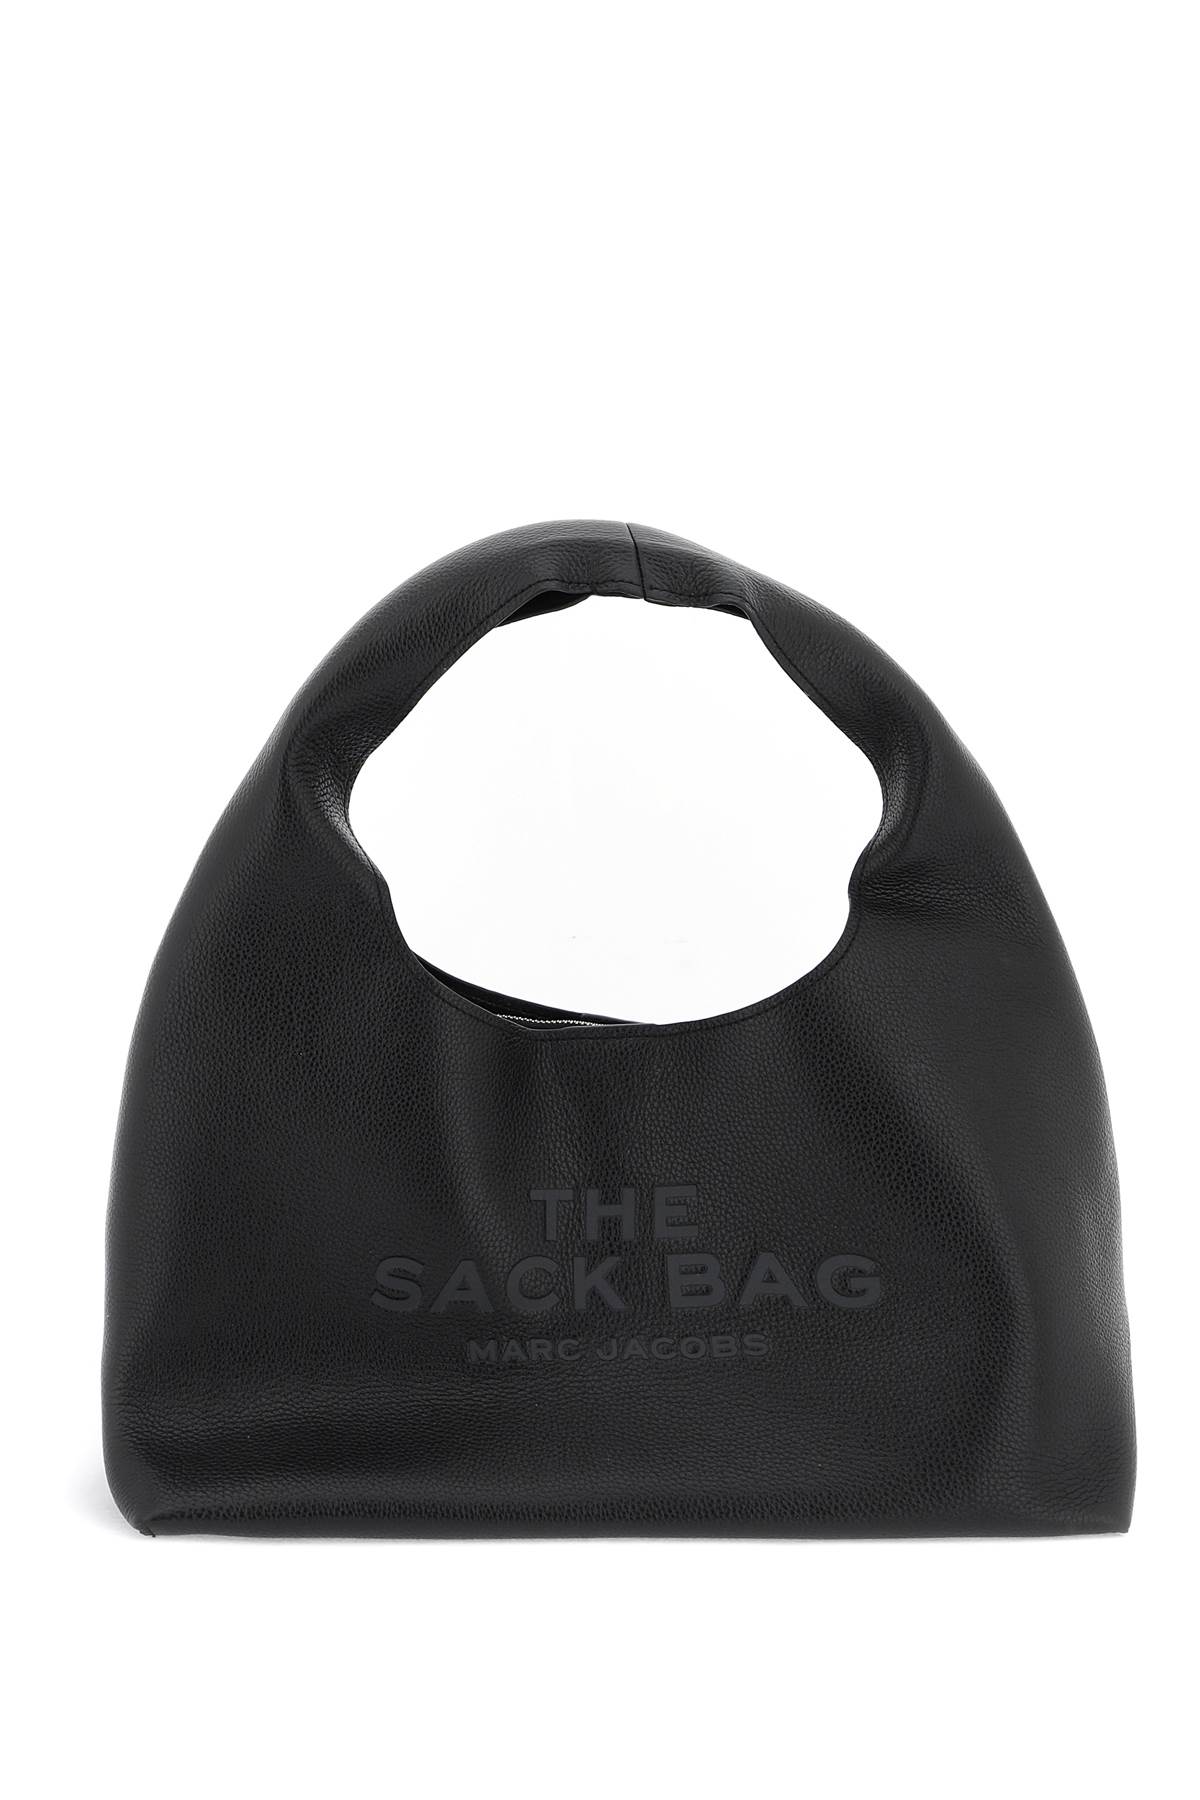 The Sack Bag